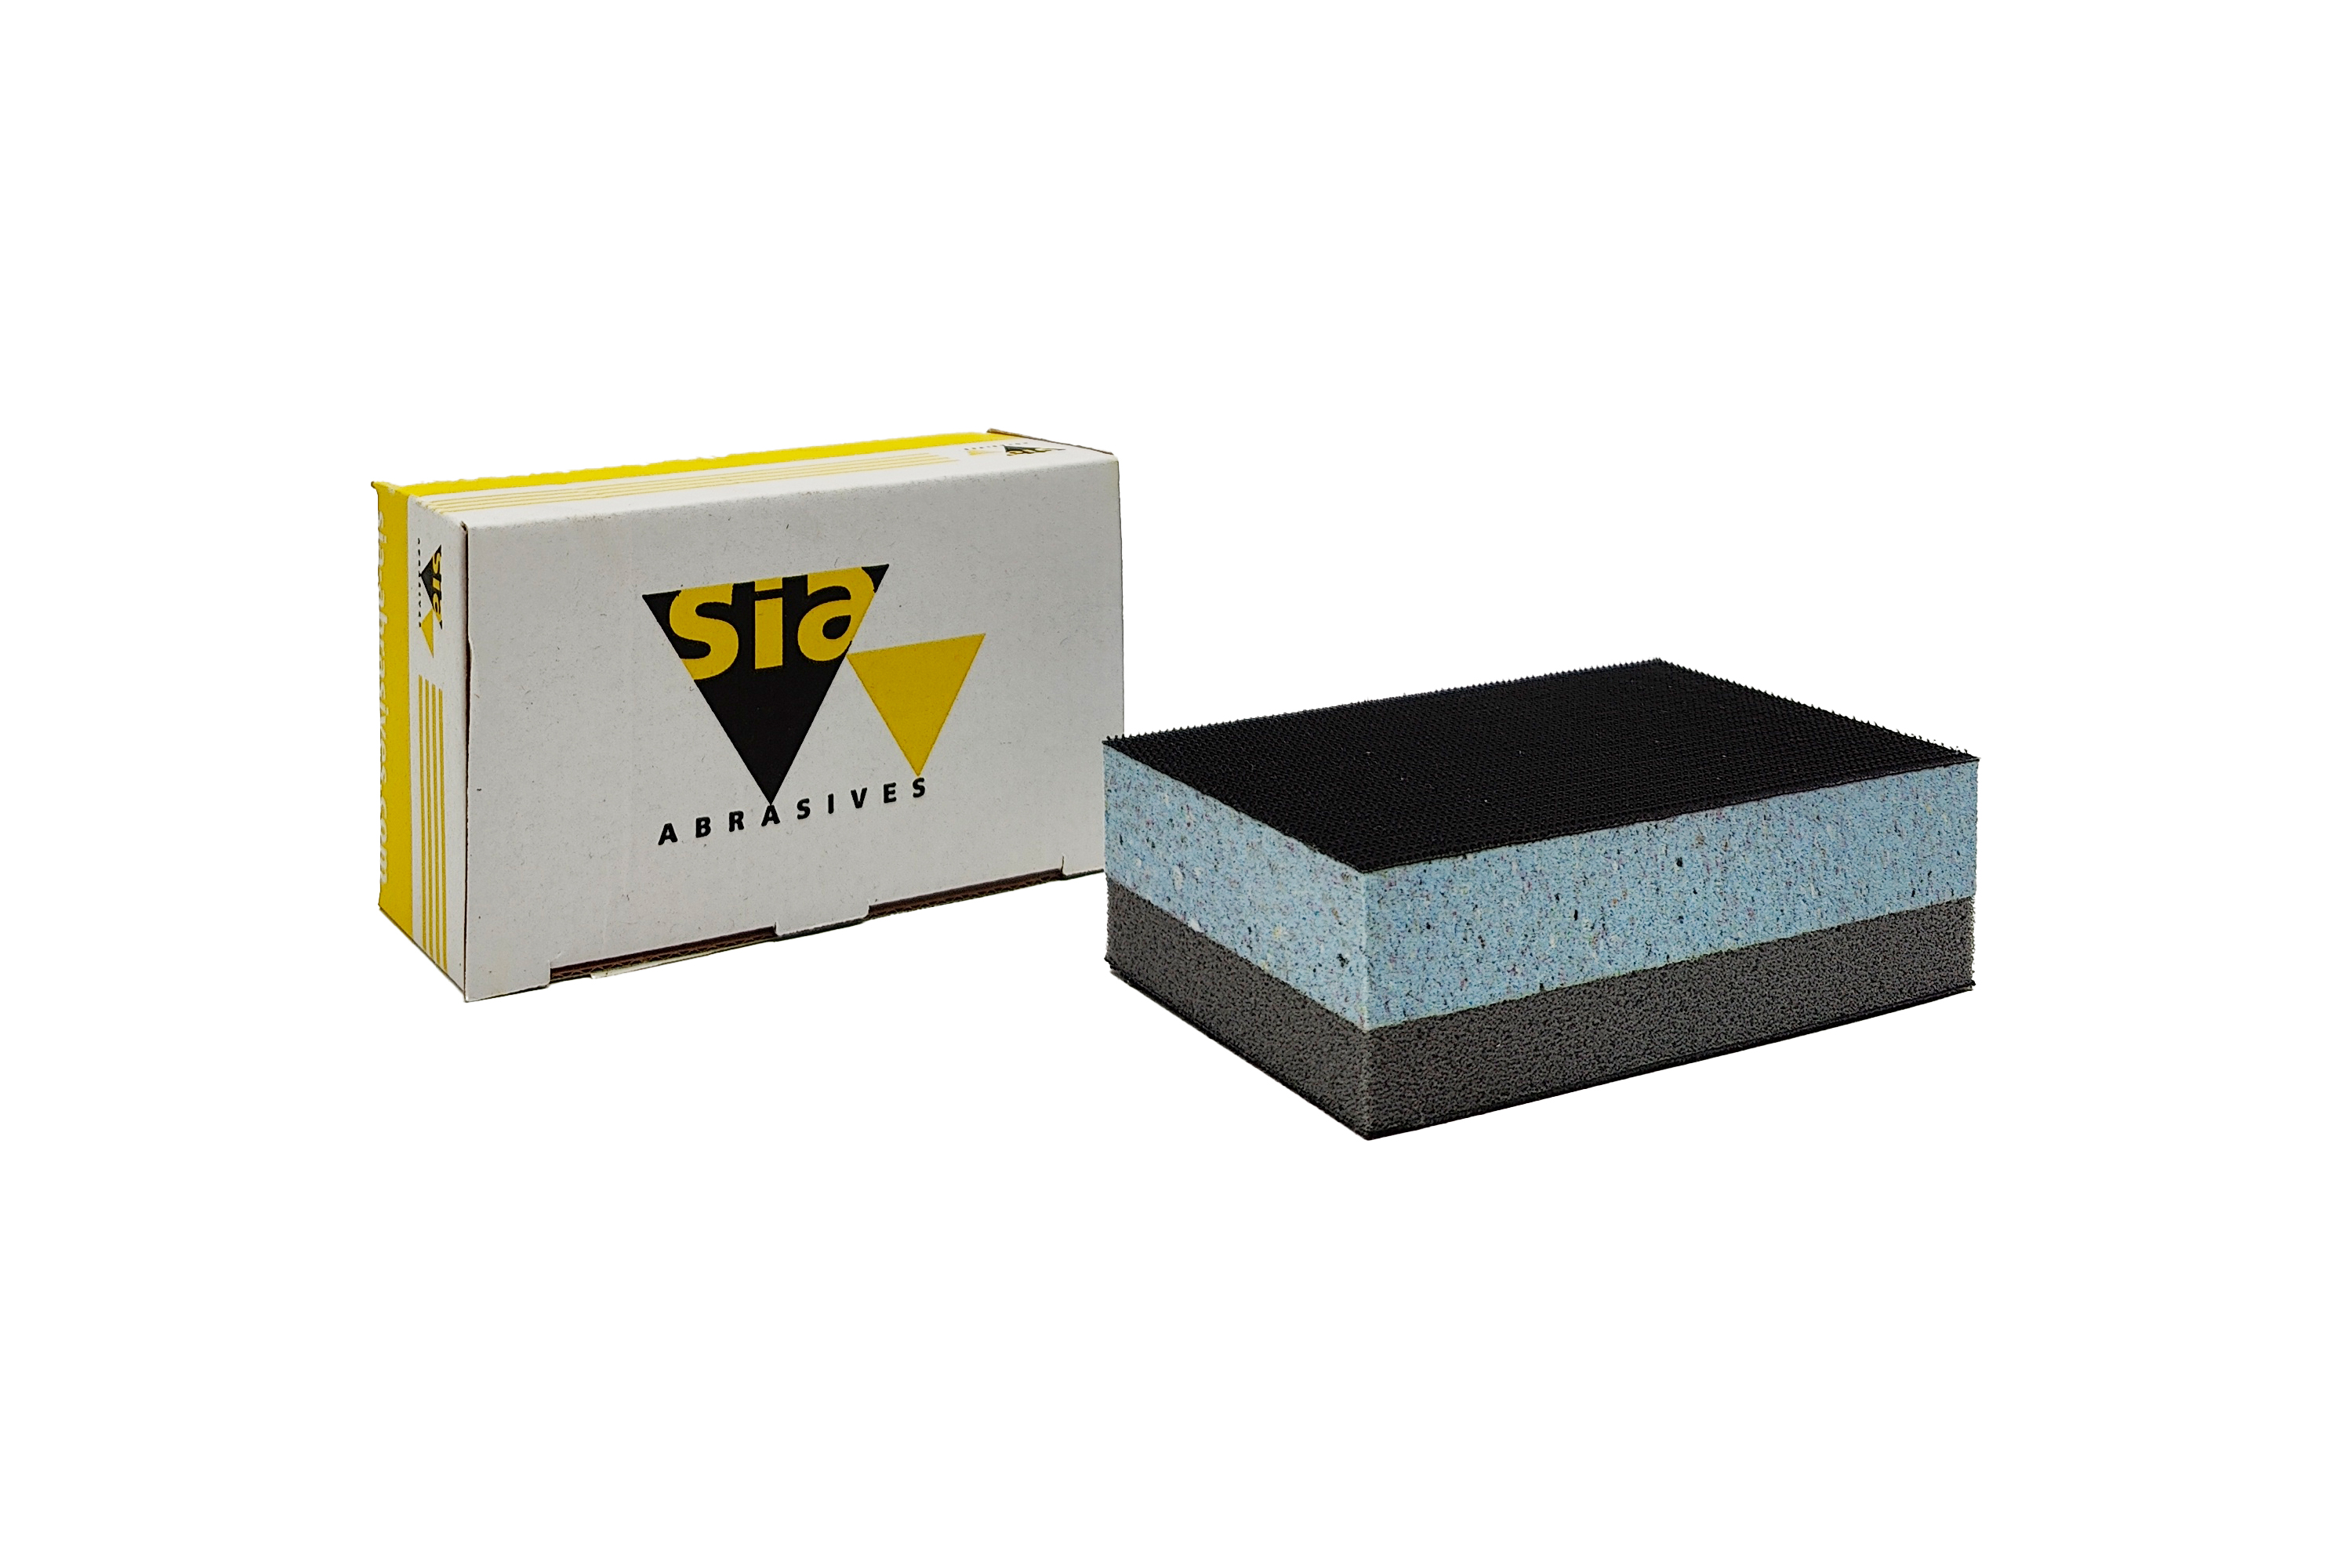 Abbildung Sia Handblock 70x125mm Grip 2 Seiten Hart.Medium-Weich mit Verpackung.